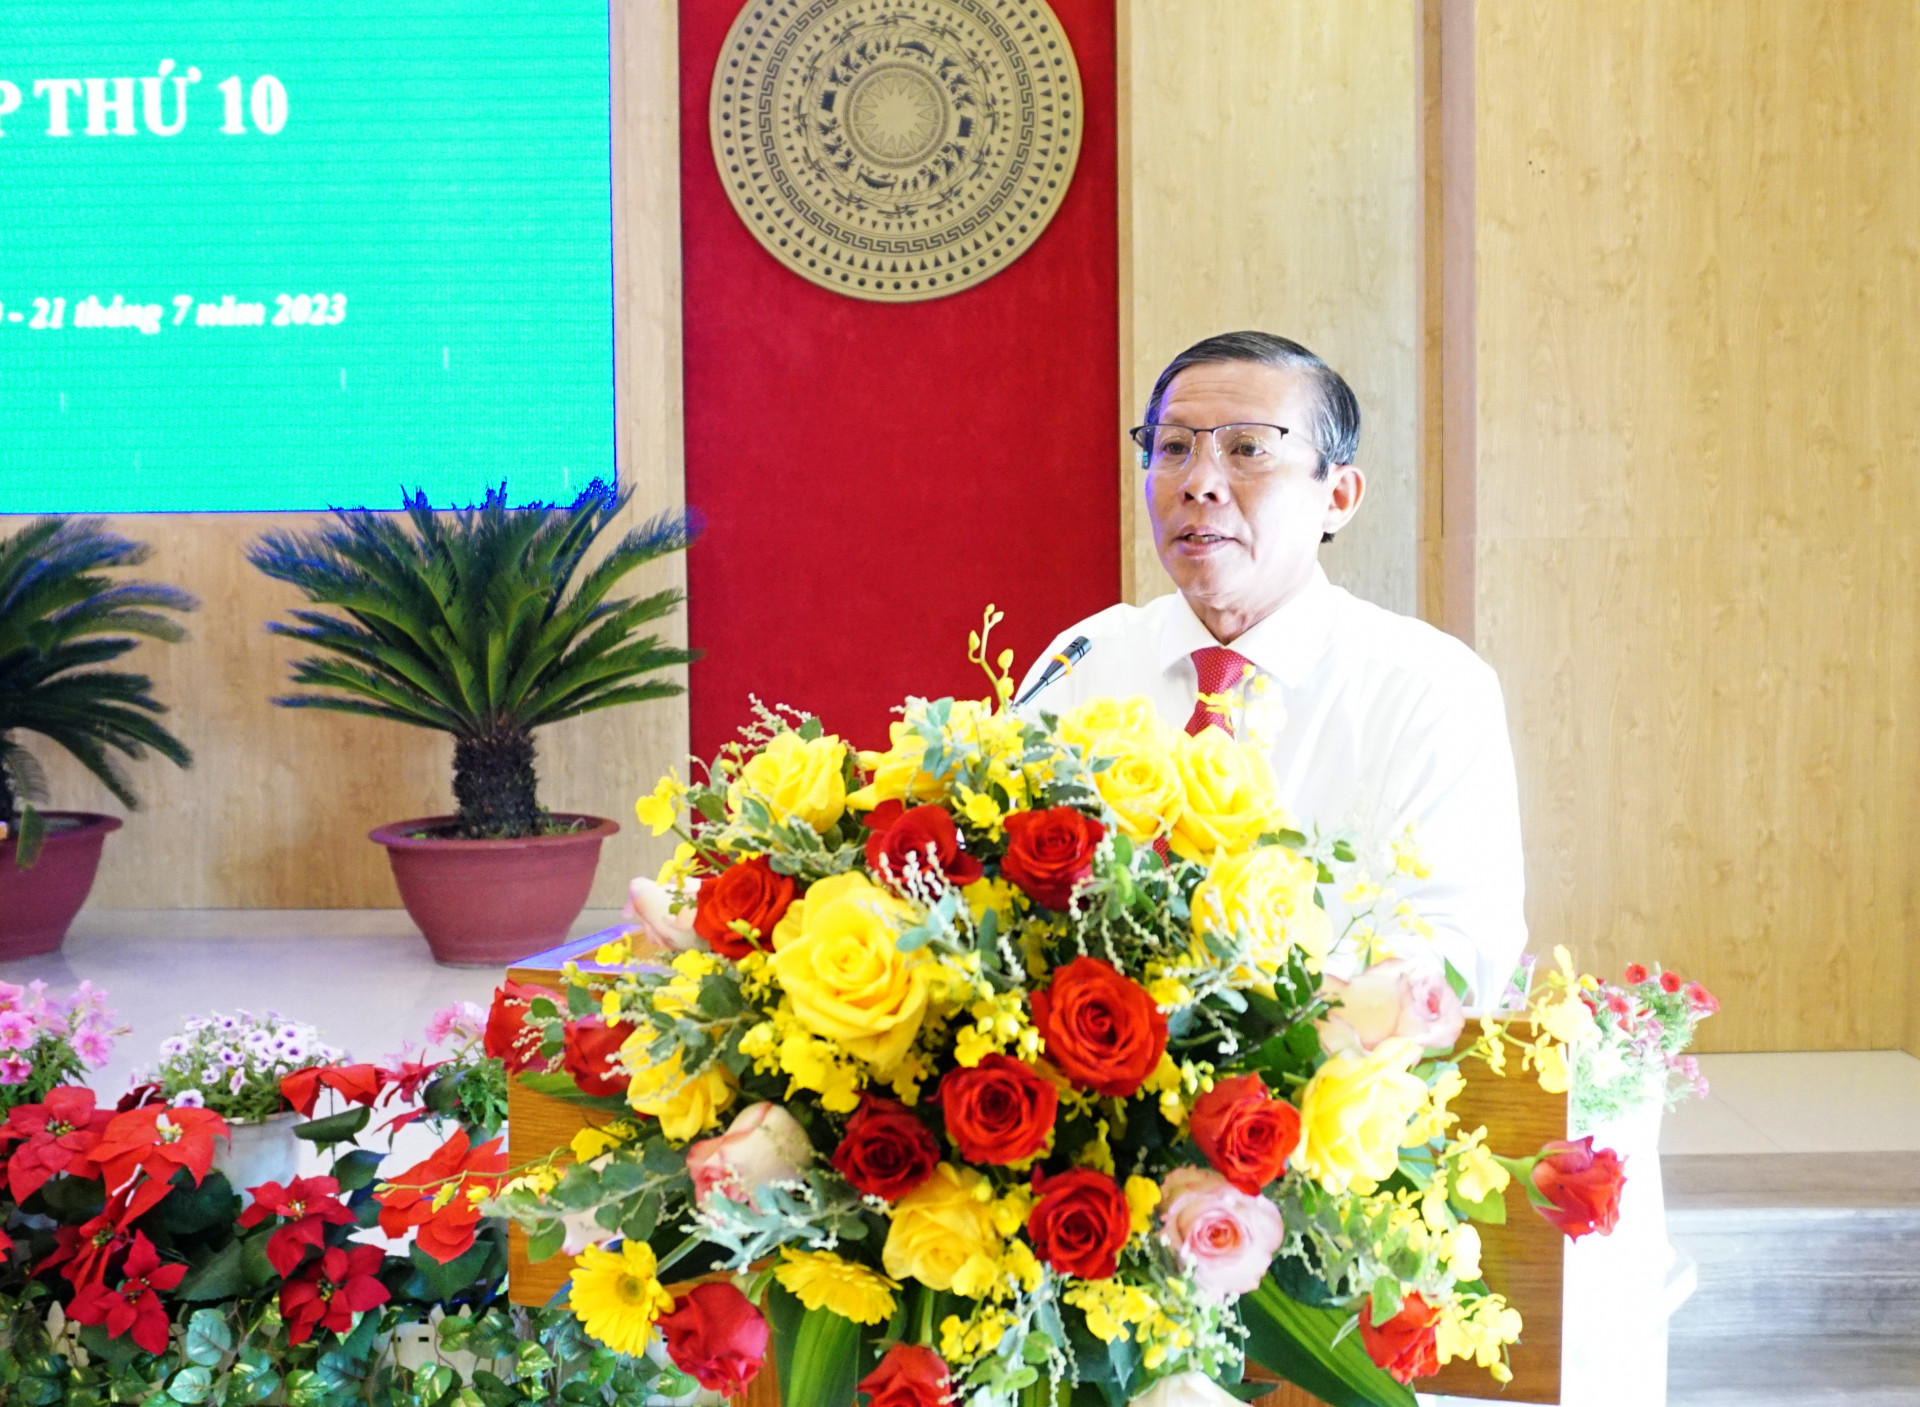 Ông Trần Ngọc Thanh – Chủ tịch Ủy ban MTTQ Việt Nam tỉnh trình bày thông báo về công tác Mặt trận tham gia xây dựng chính quyền 6 tháng đầu năm 2023.